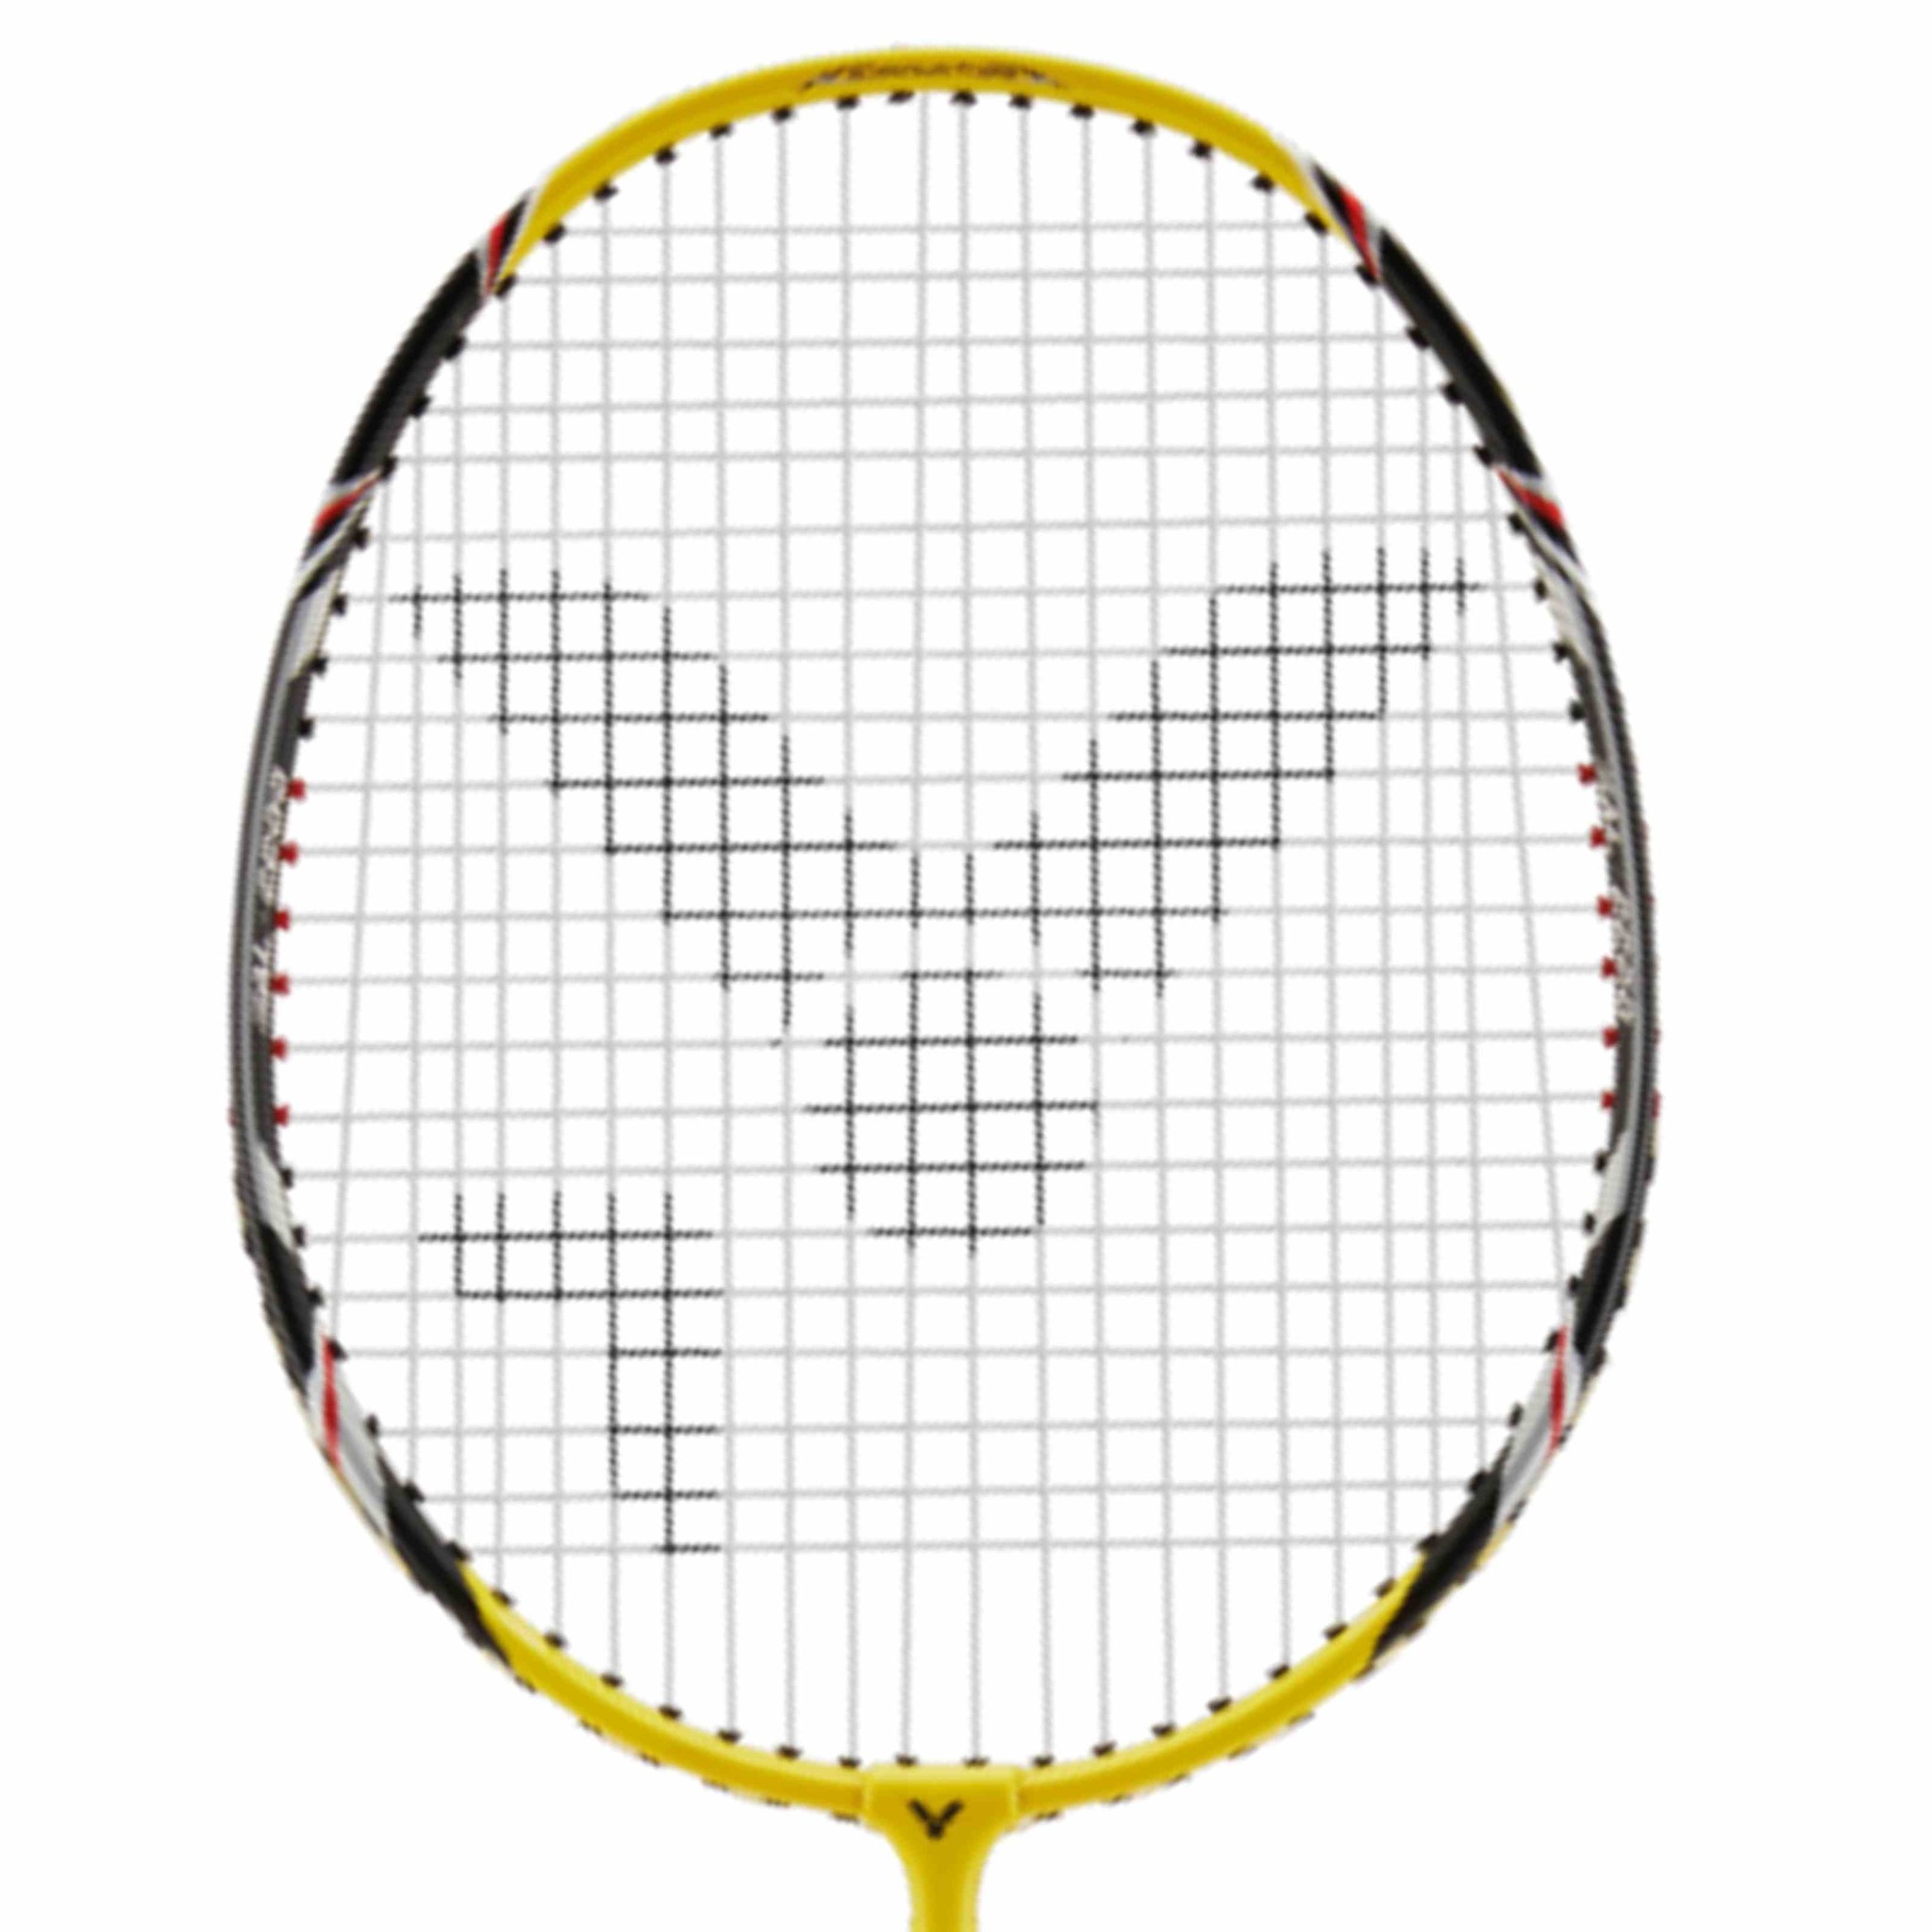 waarschijnlijk werkloosheid Spreekwoord Victor AL-2200 beginners badminton racket kopen? - KW FLEX racket  speciaalzaak